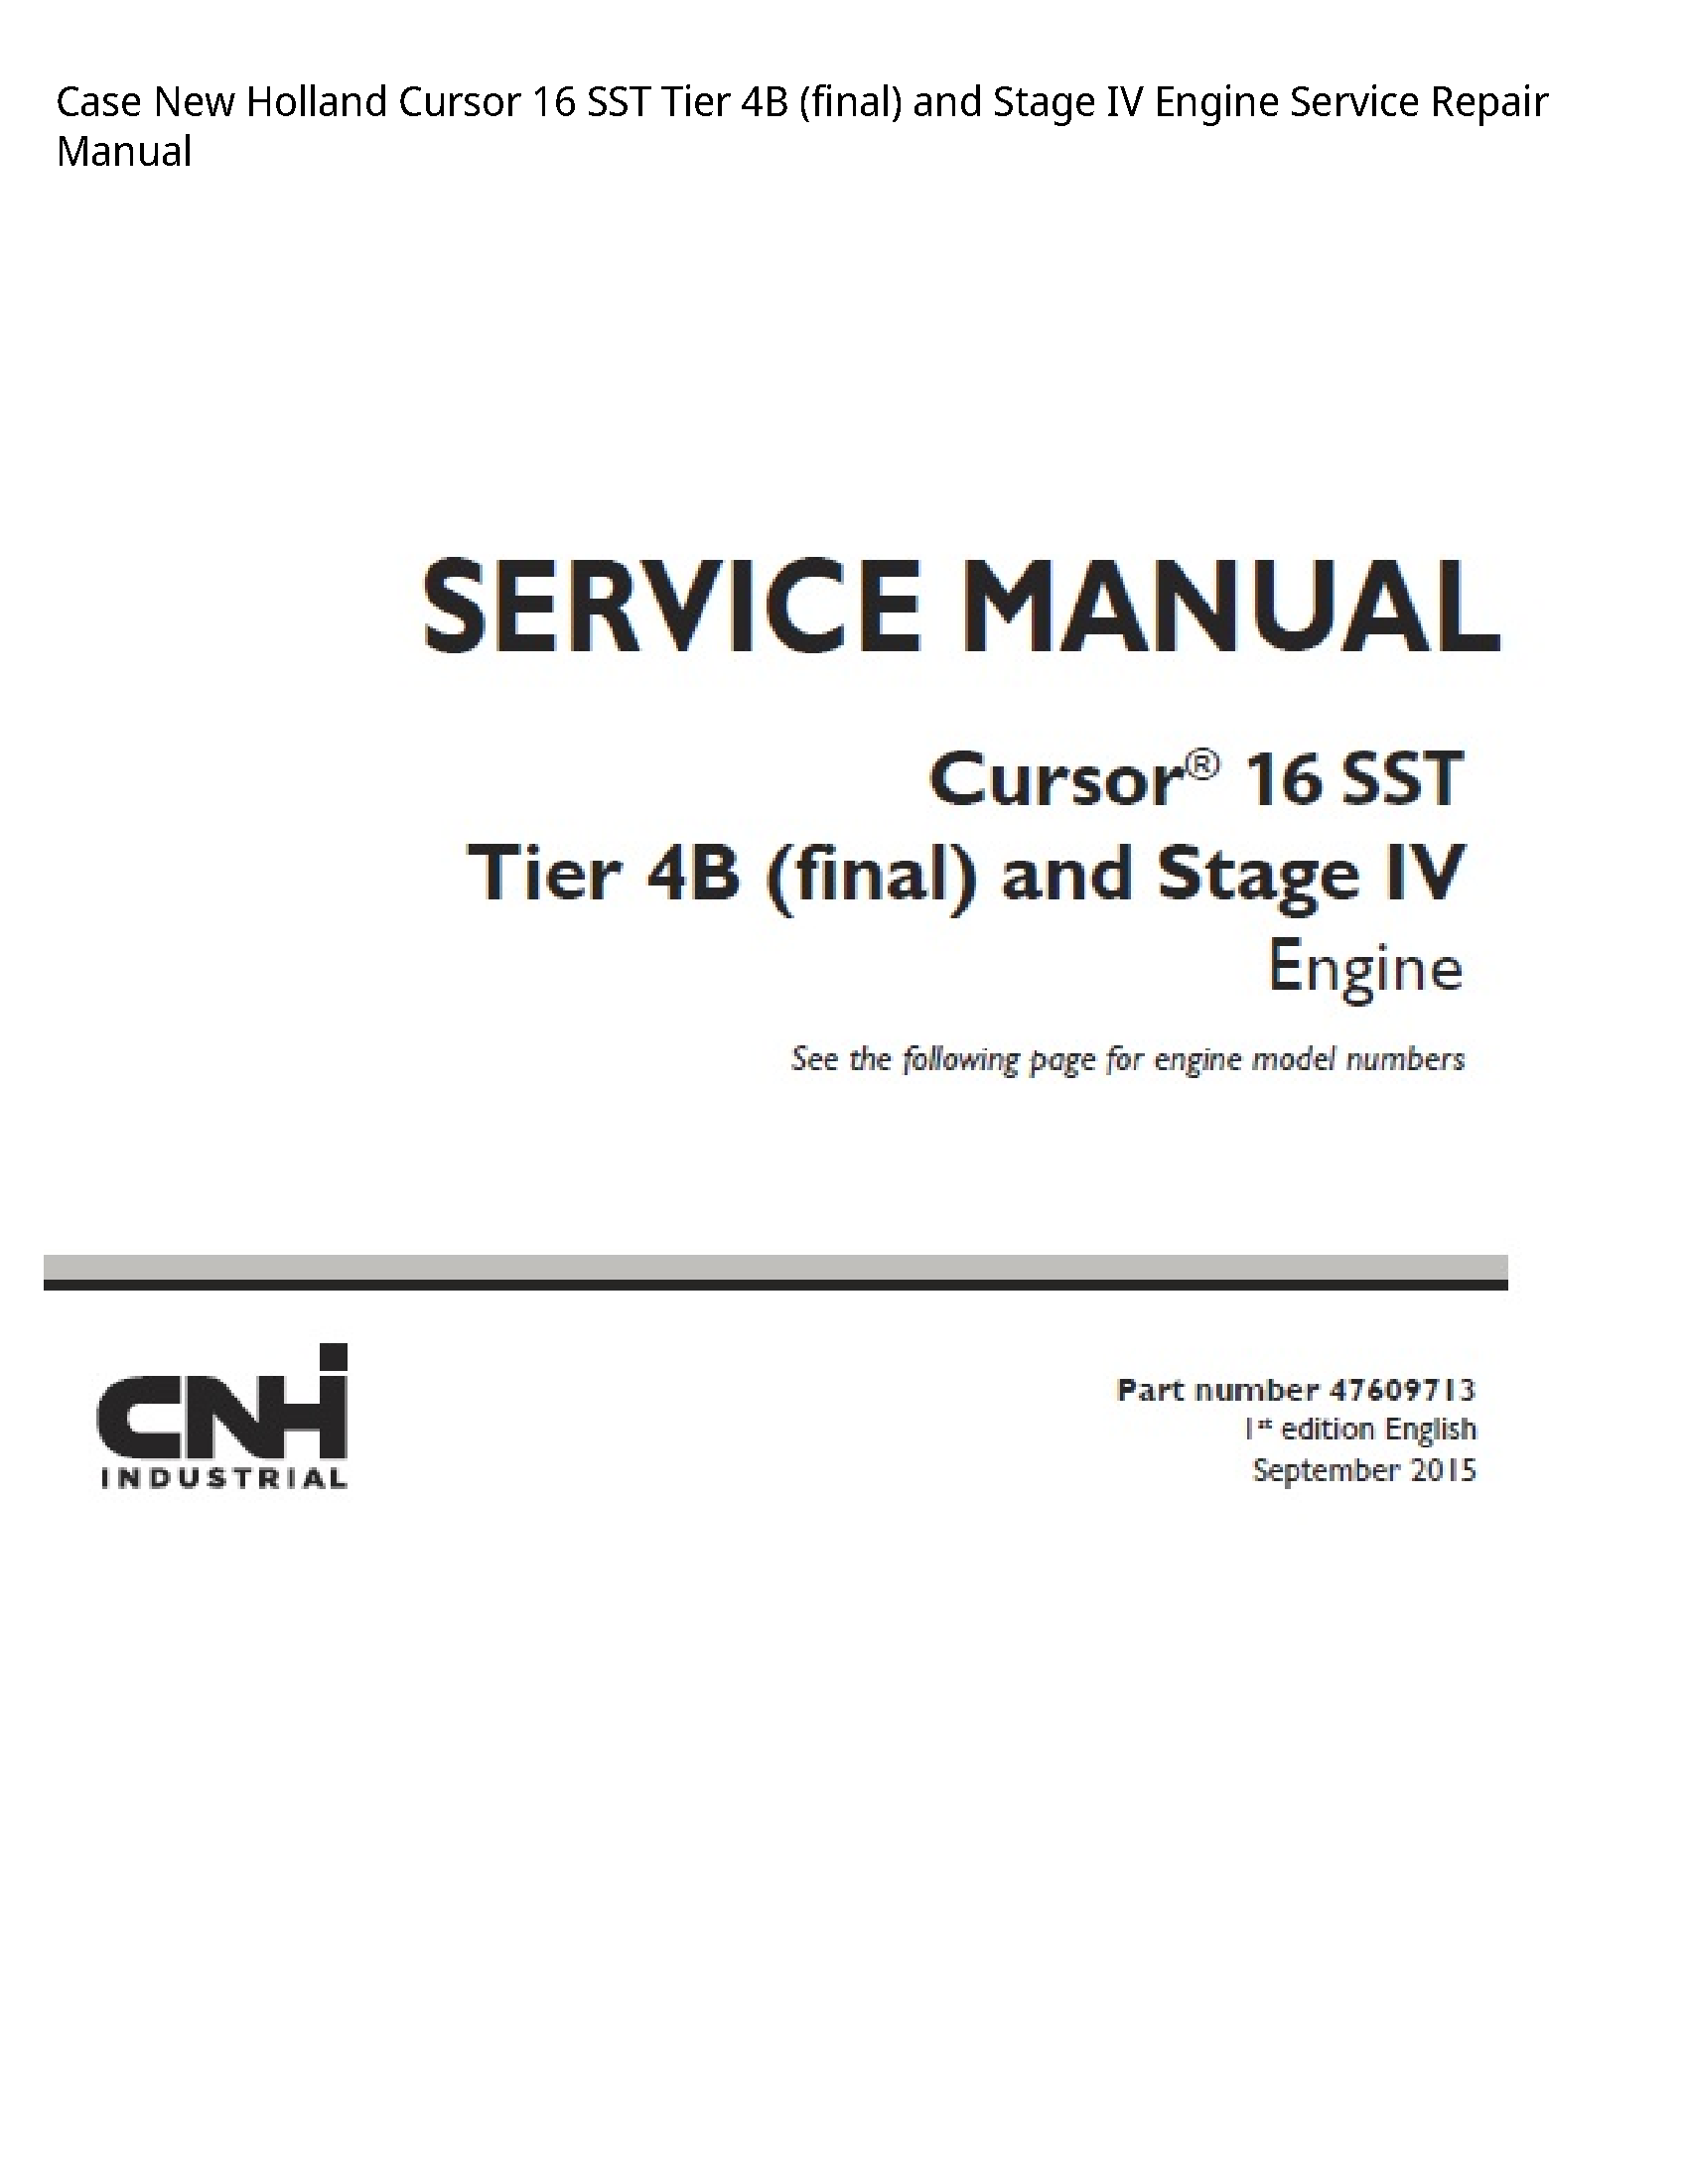 Case/Case IH 16 New Holland Cursor SST Tier (final)  Stage IV Engine manual